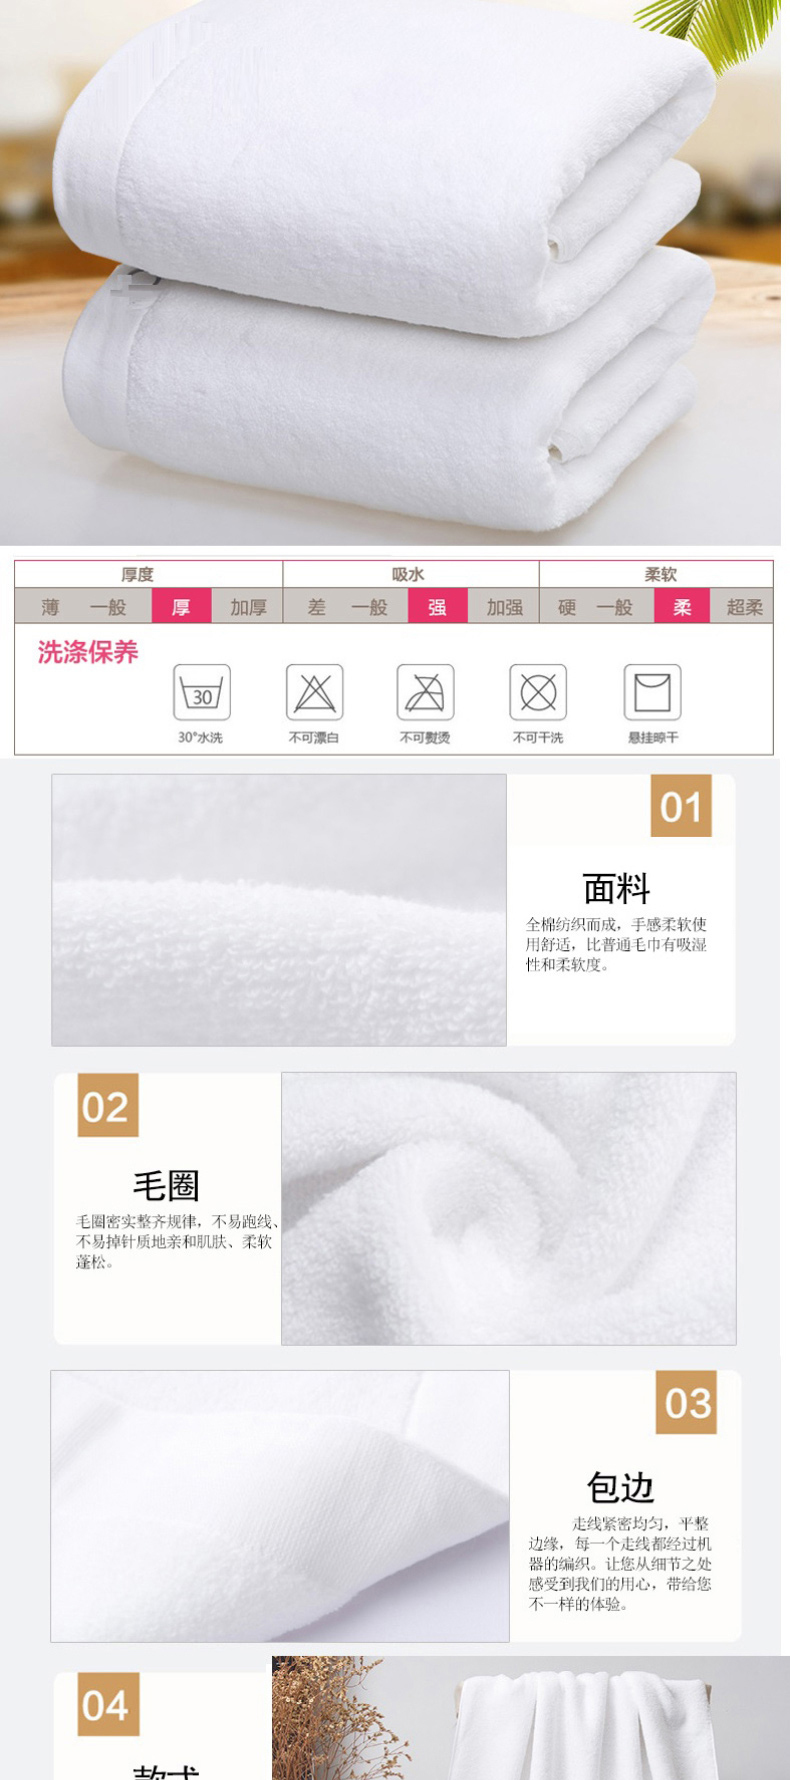 洁丽雅 grace 浴巾 76*152cm (白色)